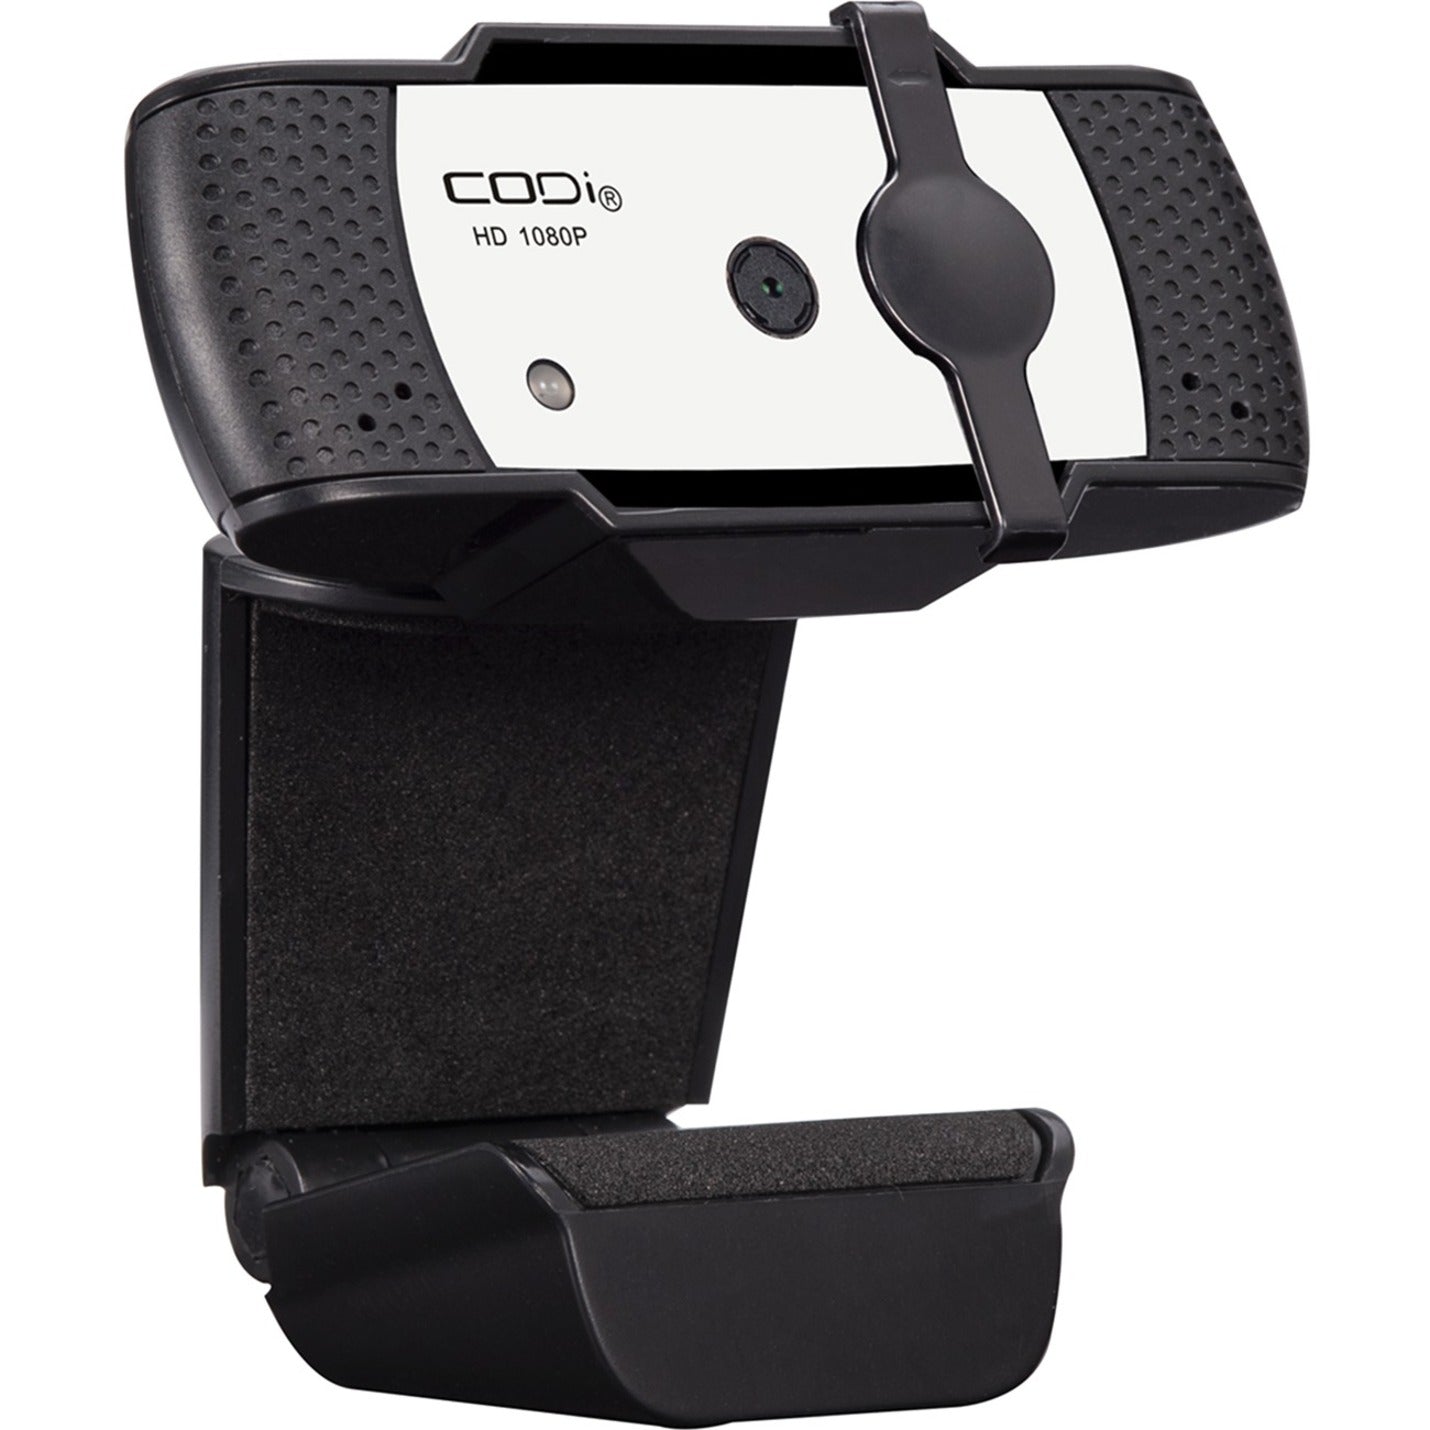 CODi A05020 Falco HD 1080P Autofocus Webcam, 1920 x 1080, Built-in Microphone